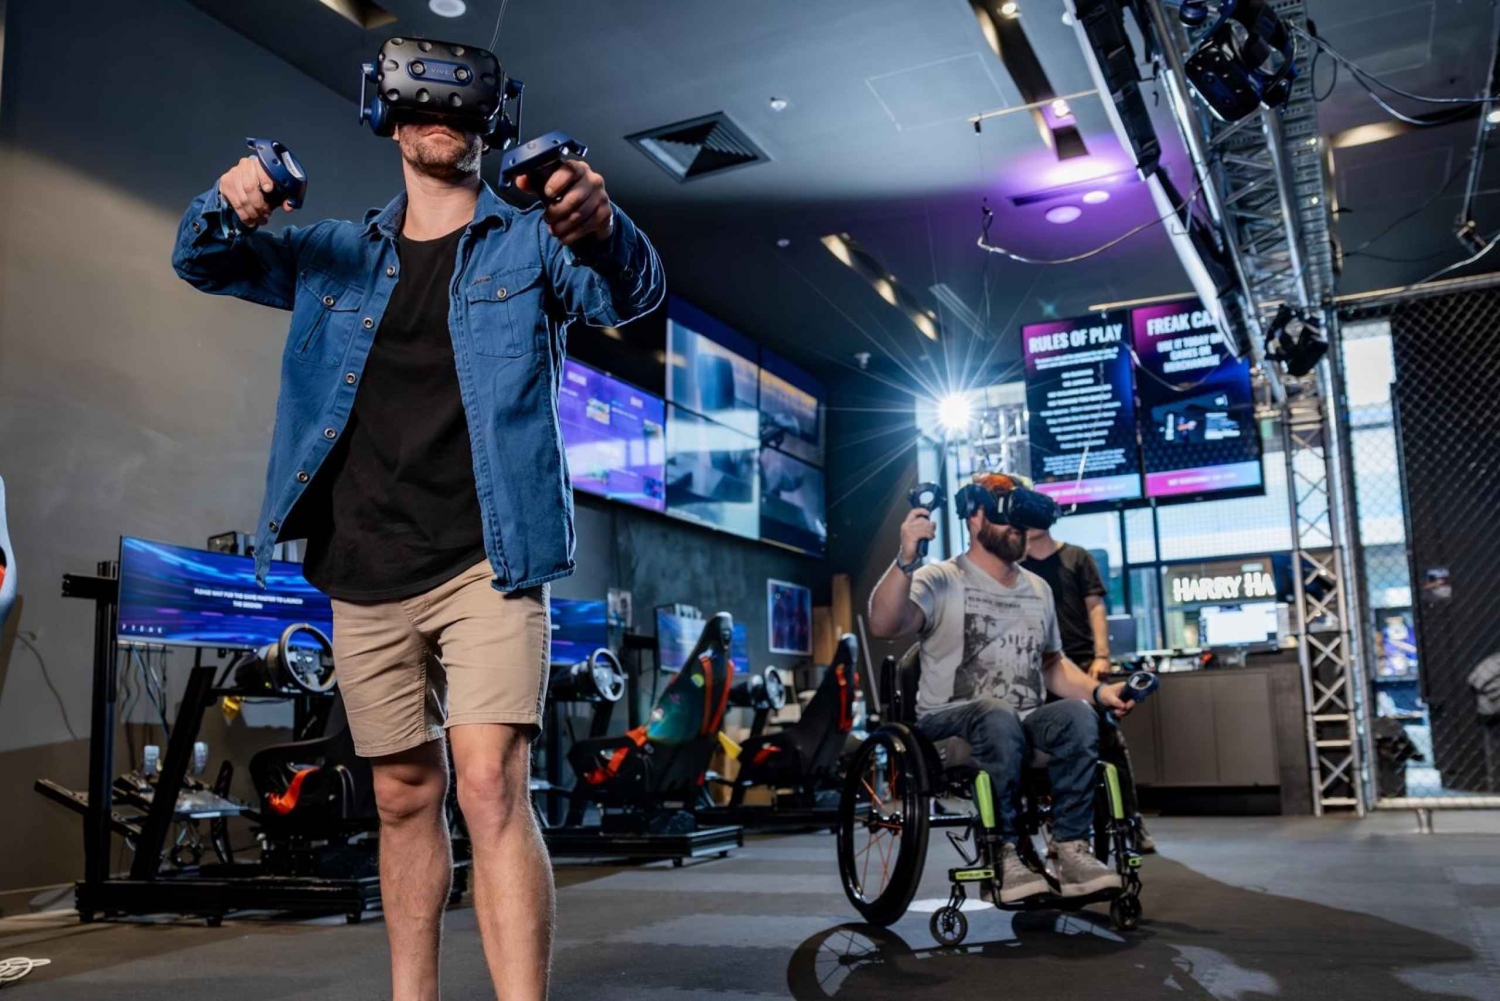 Macquarie Centre: VR Escape Room-opplevelse for 2 personer